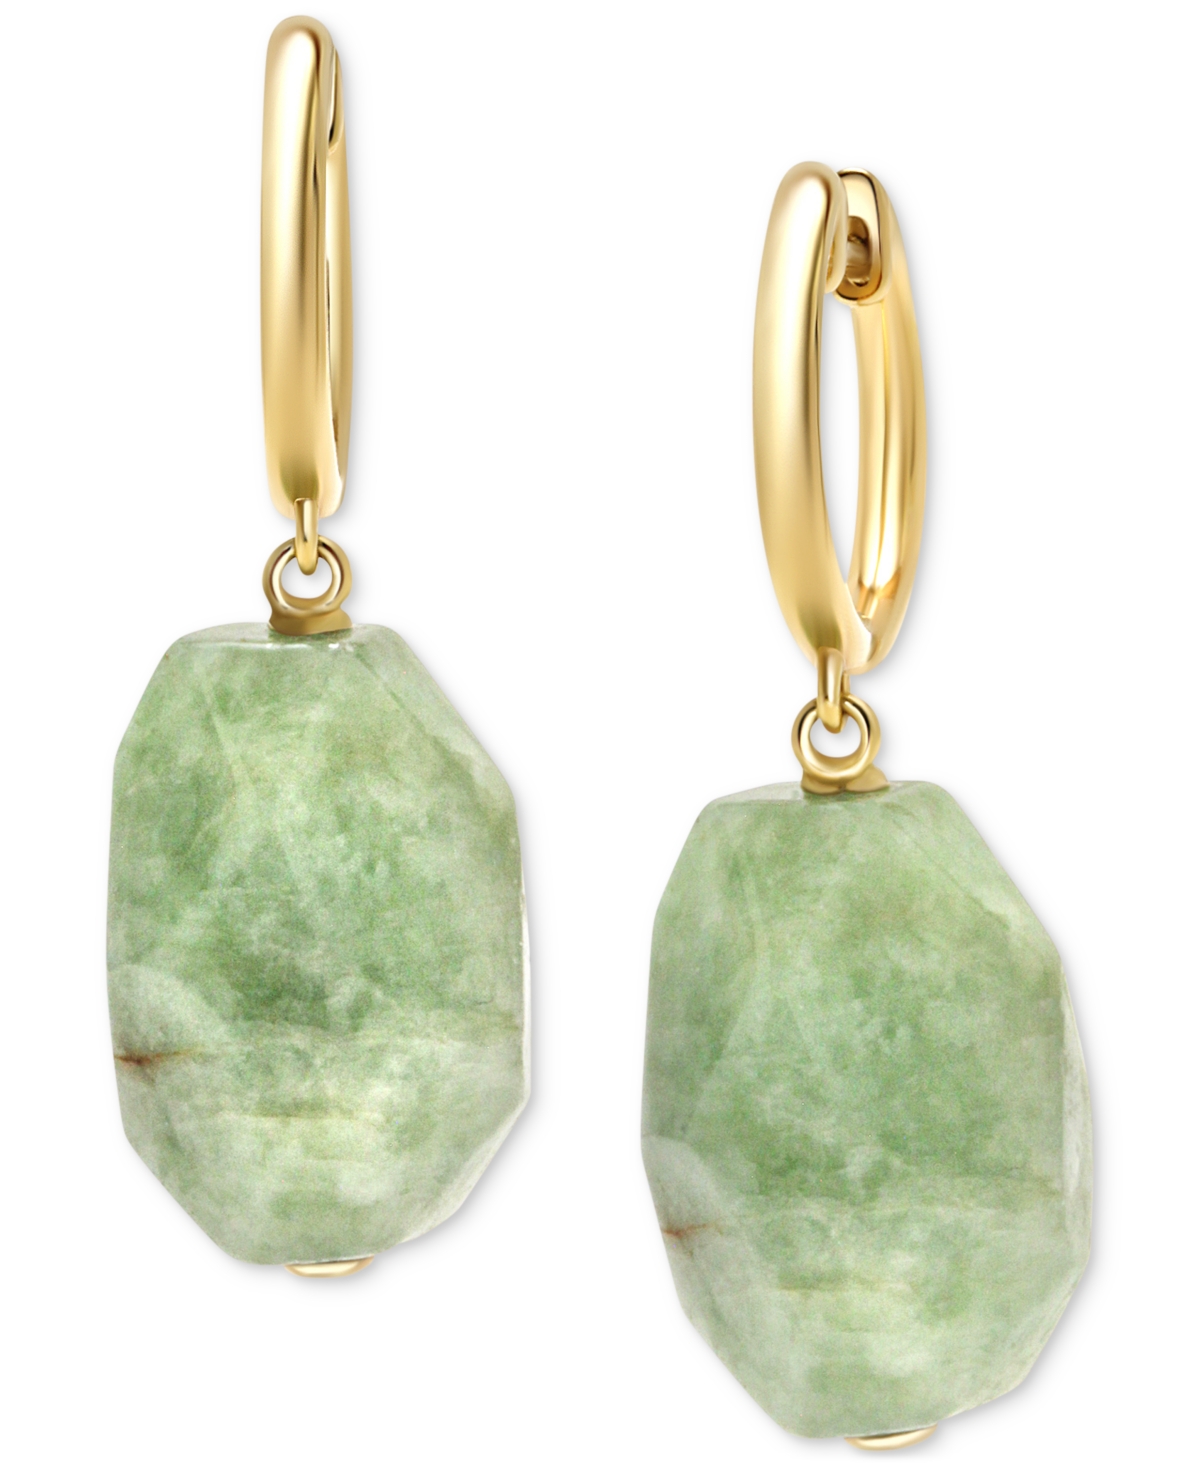 Dyed Green Jade Freeform Dangle Hoop Drop Earrings in 14k Gold-Plated Sterling Silver - Jade